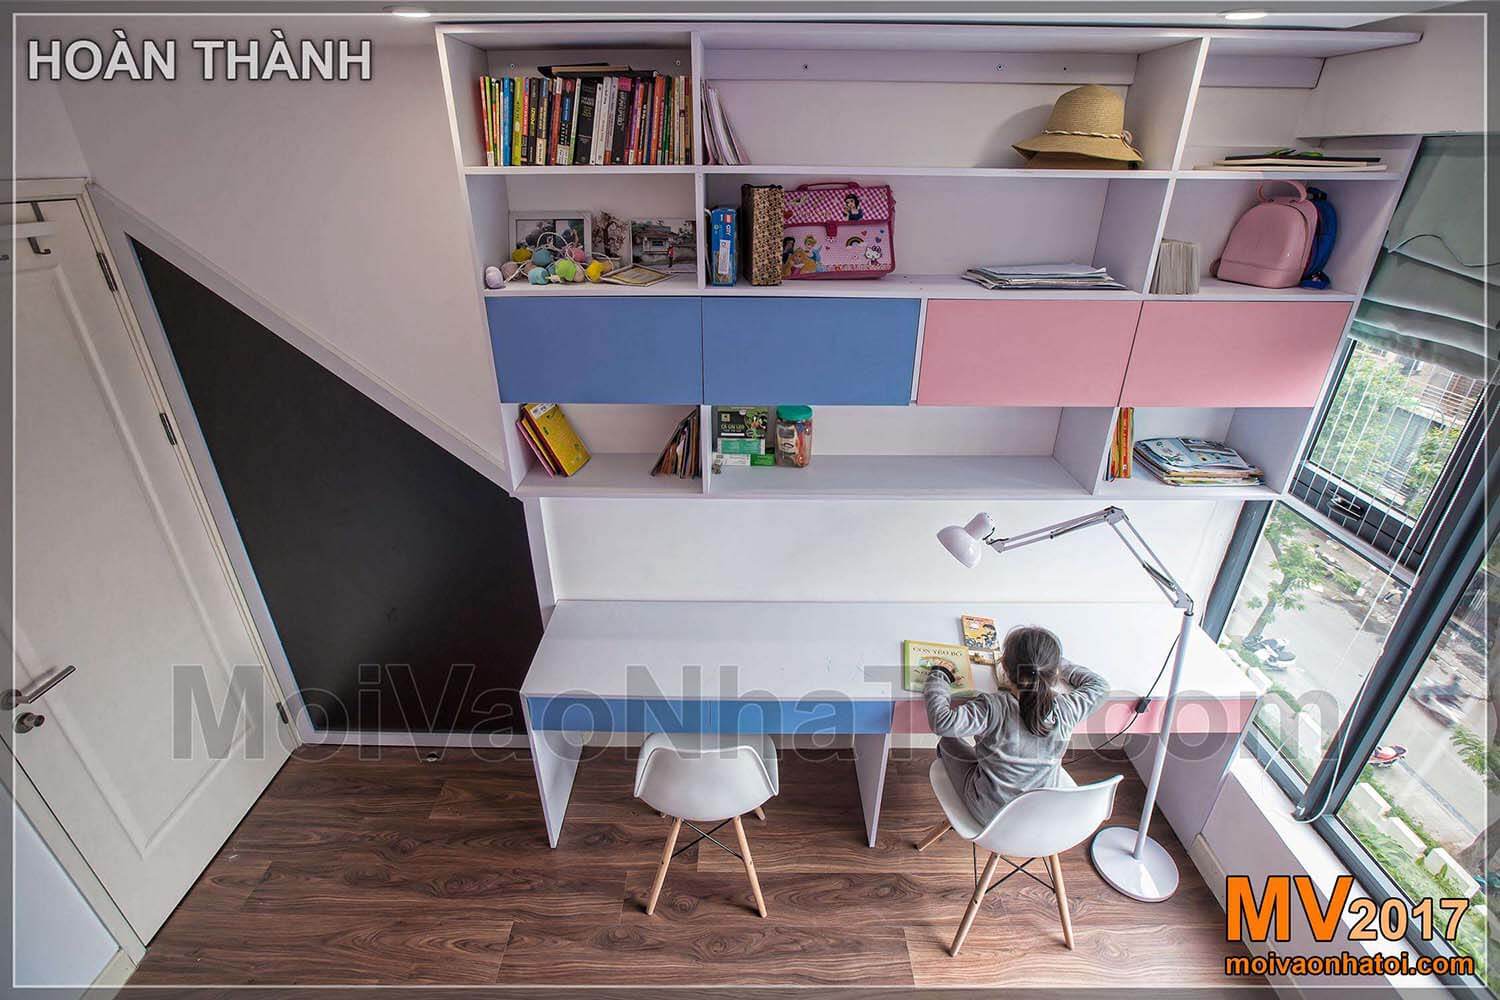 การออกแบบห้องเรียนเด็กสีชมพู